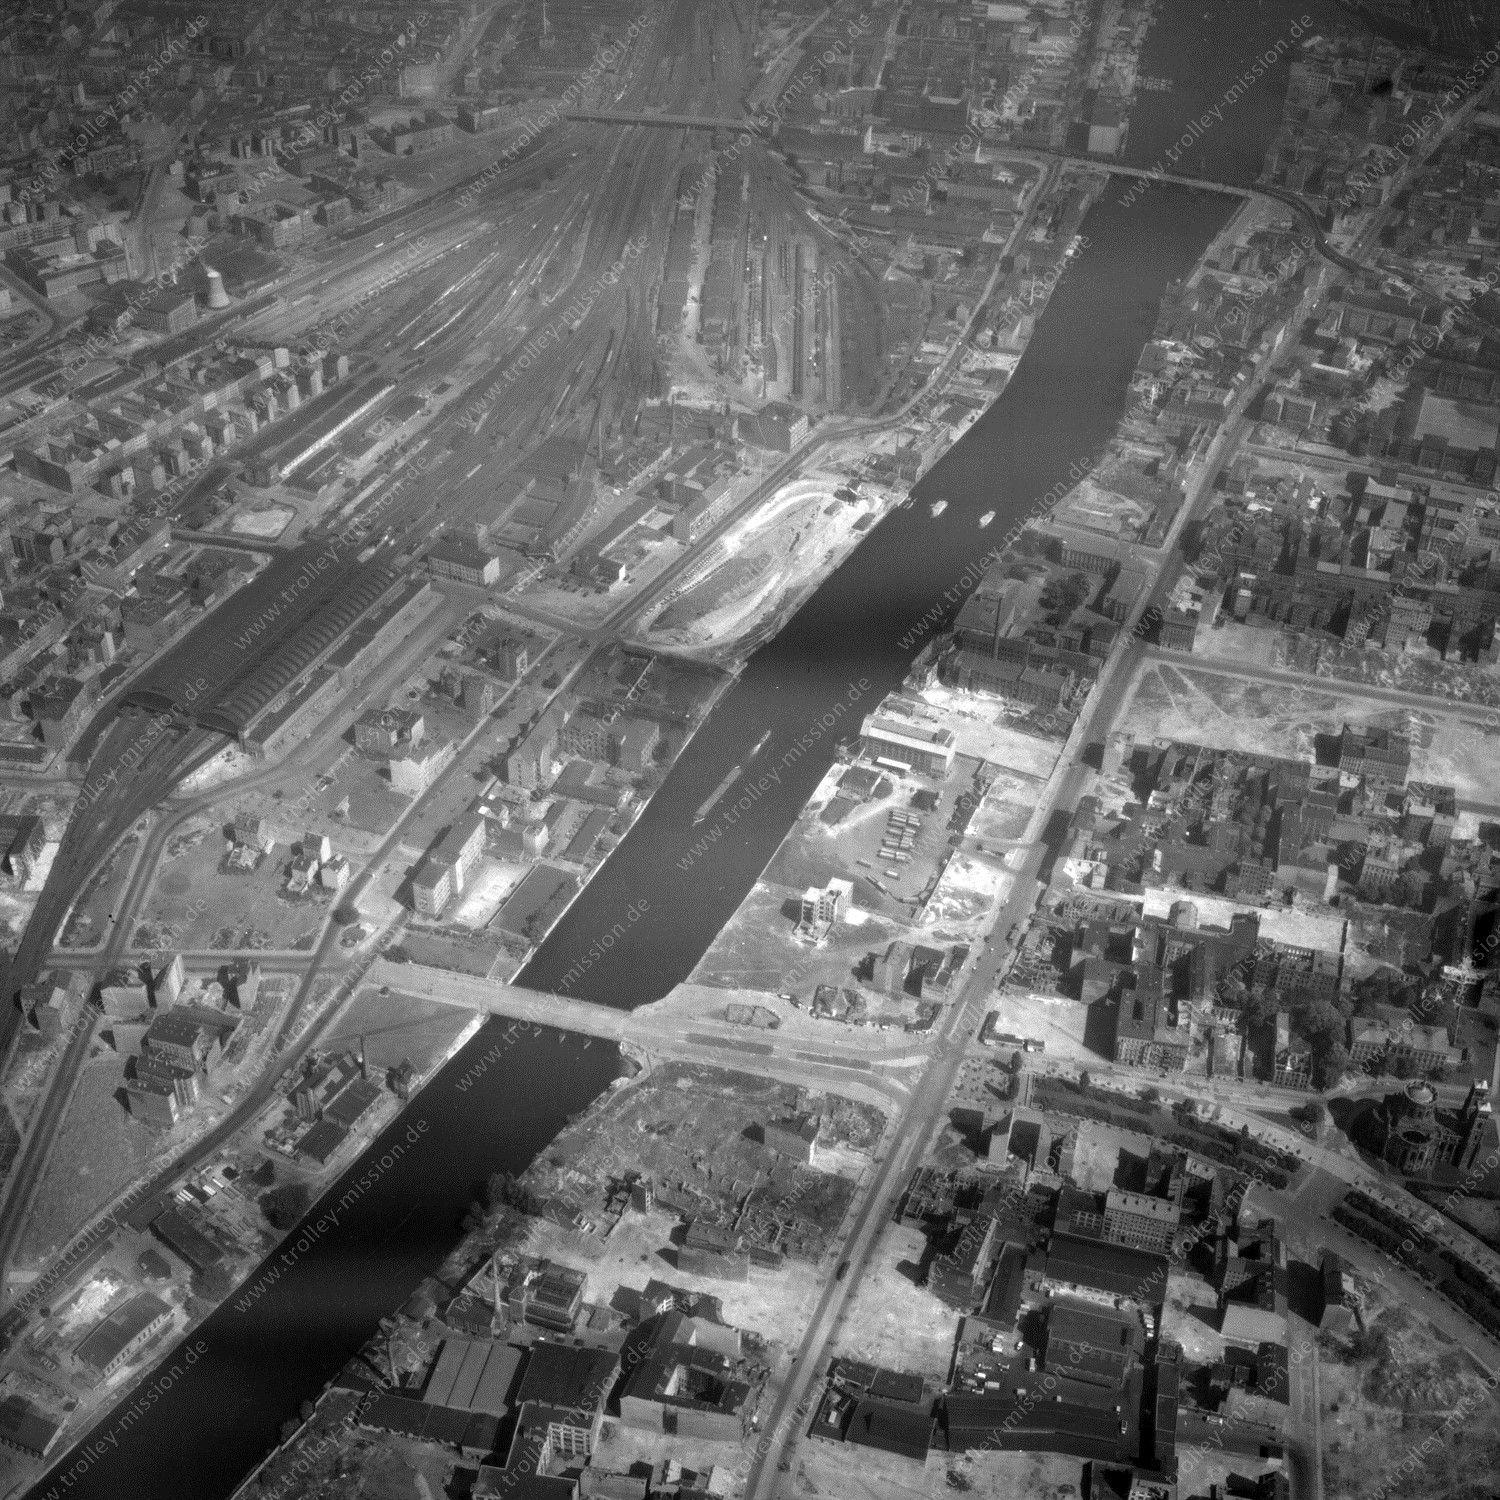 Alte Fotos und Luftbilder von Berlin - Luftbildaufnahme Nr. 11 - Historische Luftaufnahmen von West-Berlin aus dem Jahr 1954 - Flugstrecke Mike